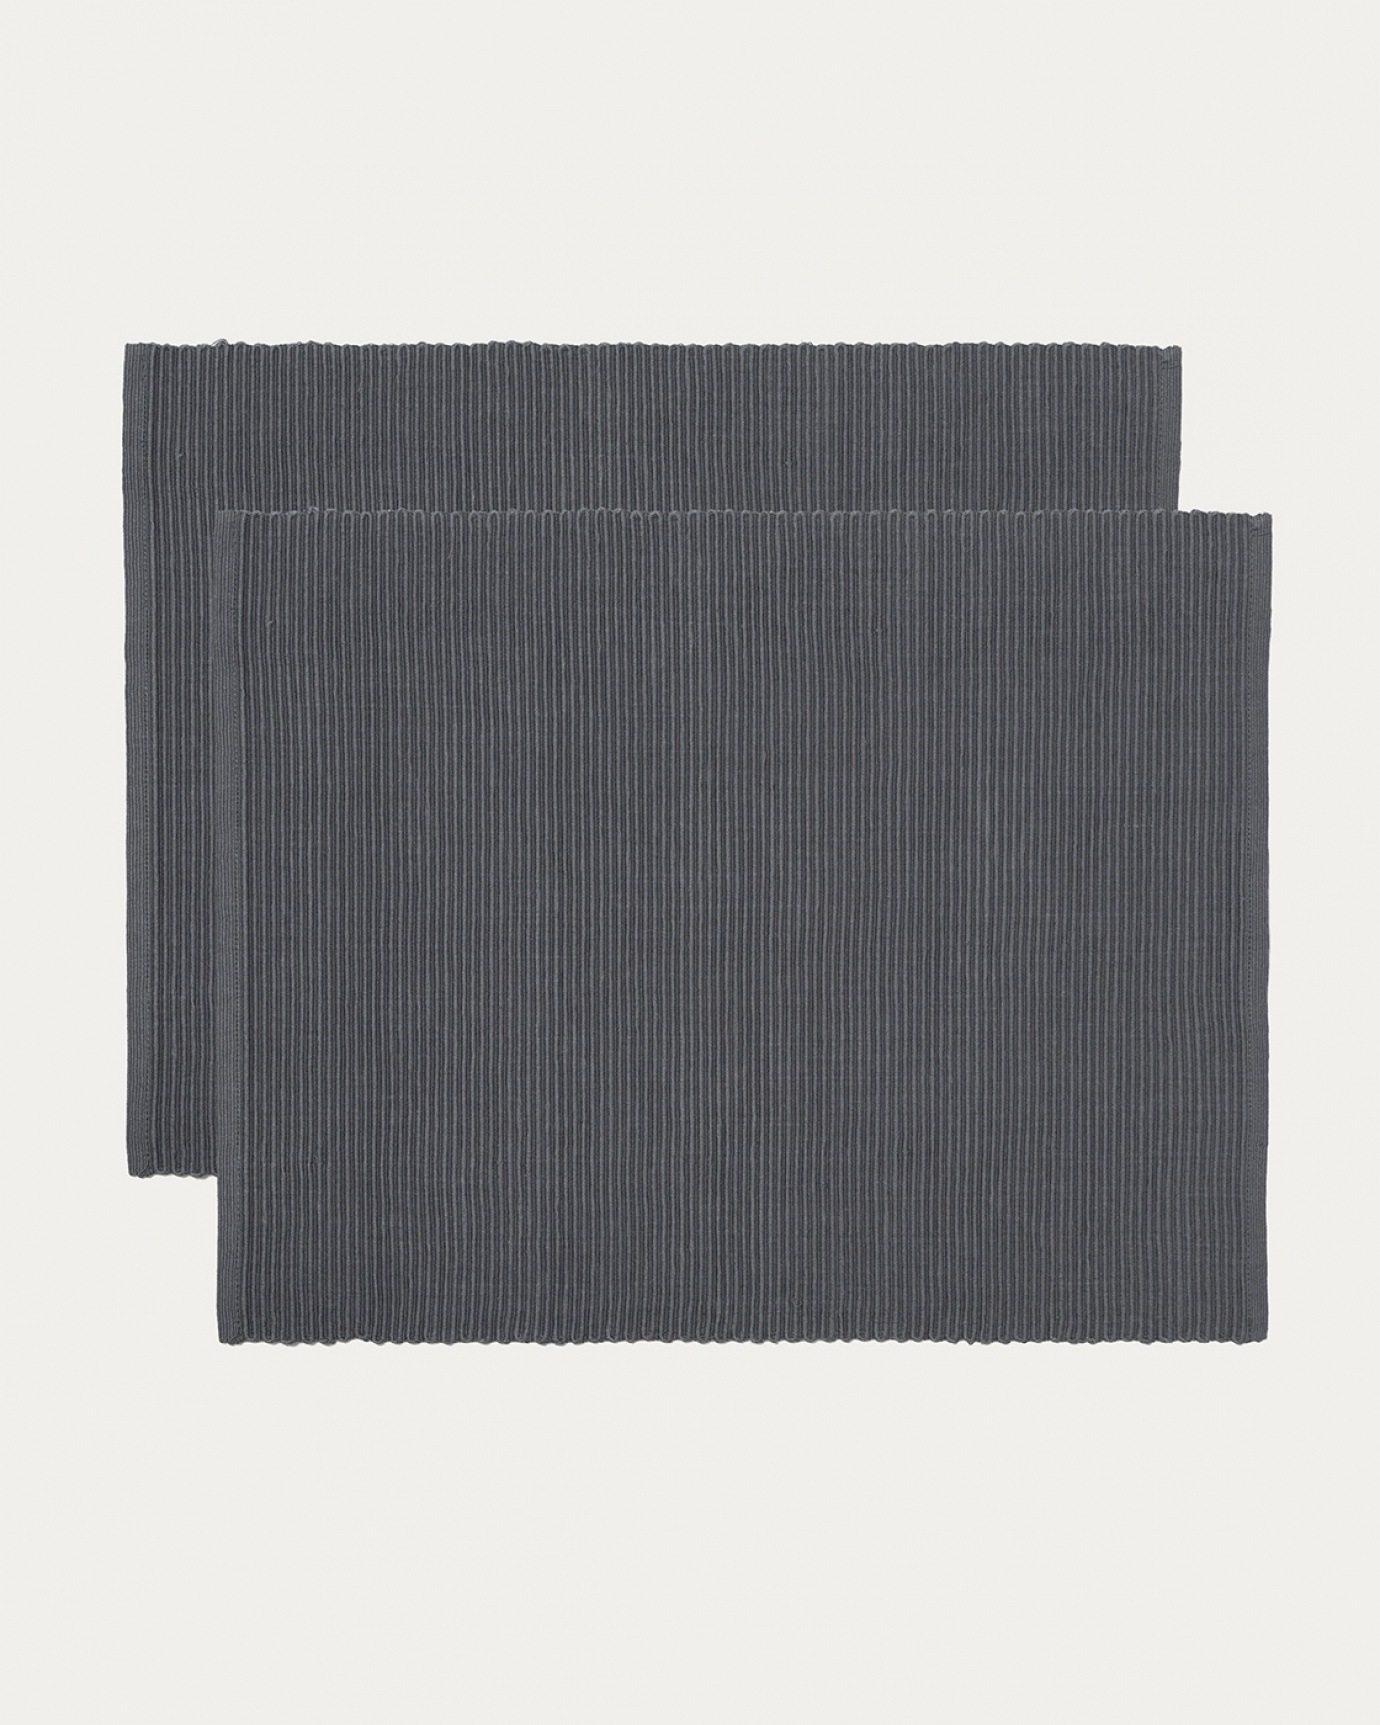 Produktbild granitgrå UNI bordstablett av mjuk bomull i ribbad kvalité från LINUM DESIGN. Storlek 35x46 cm och säljs i 2-pack.